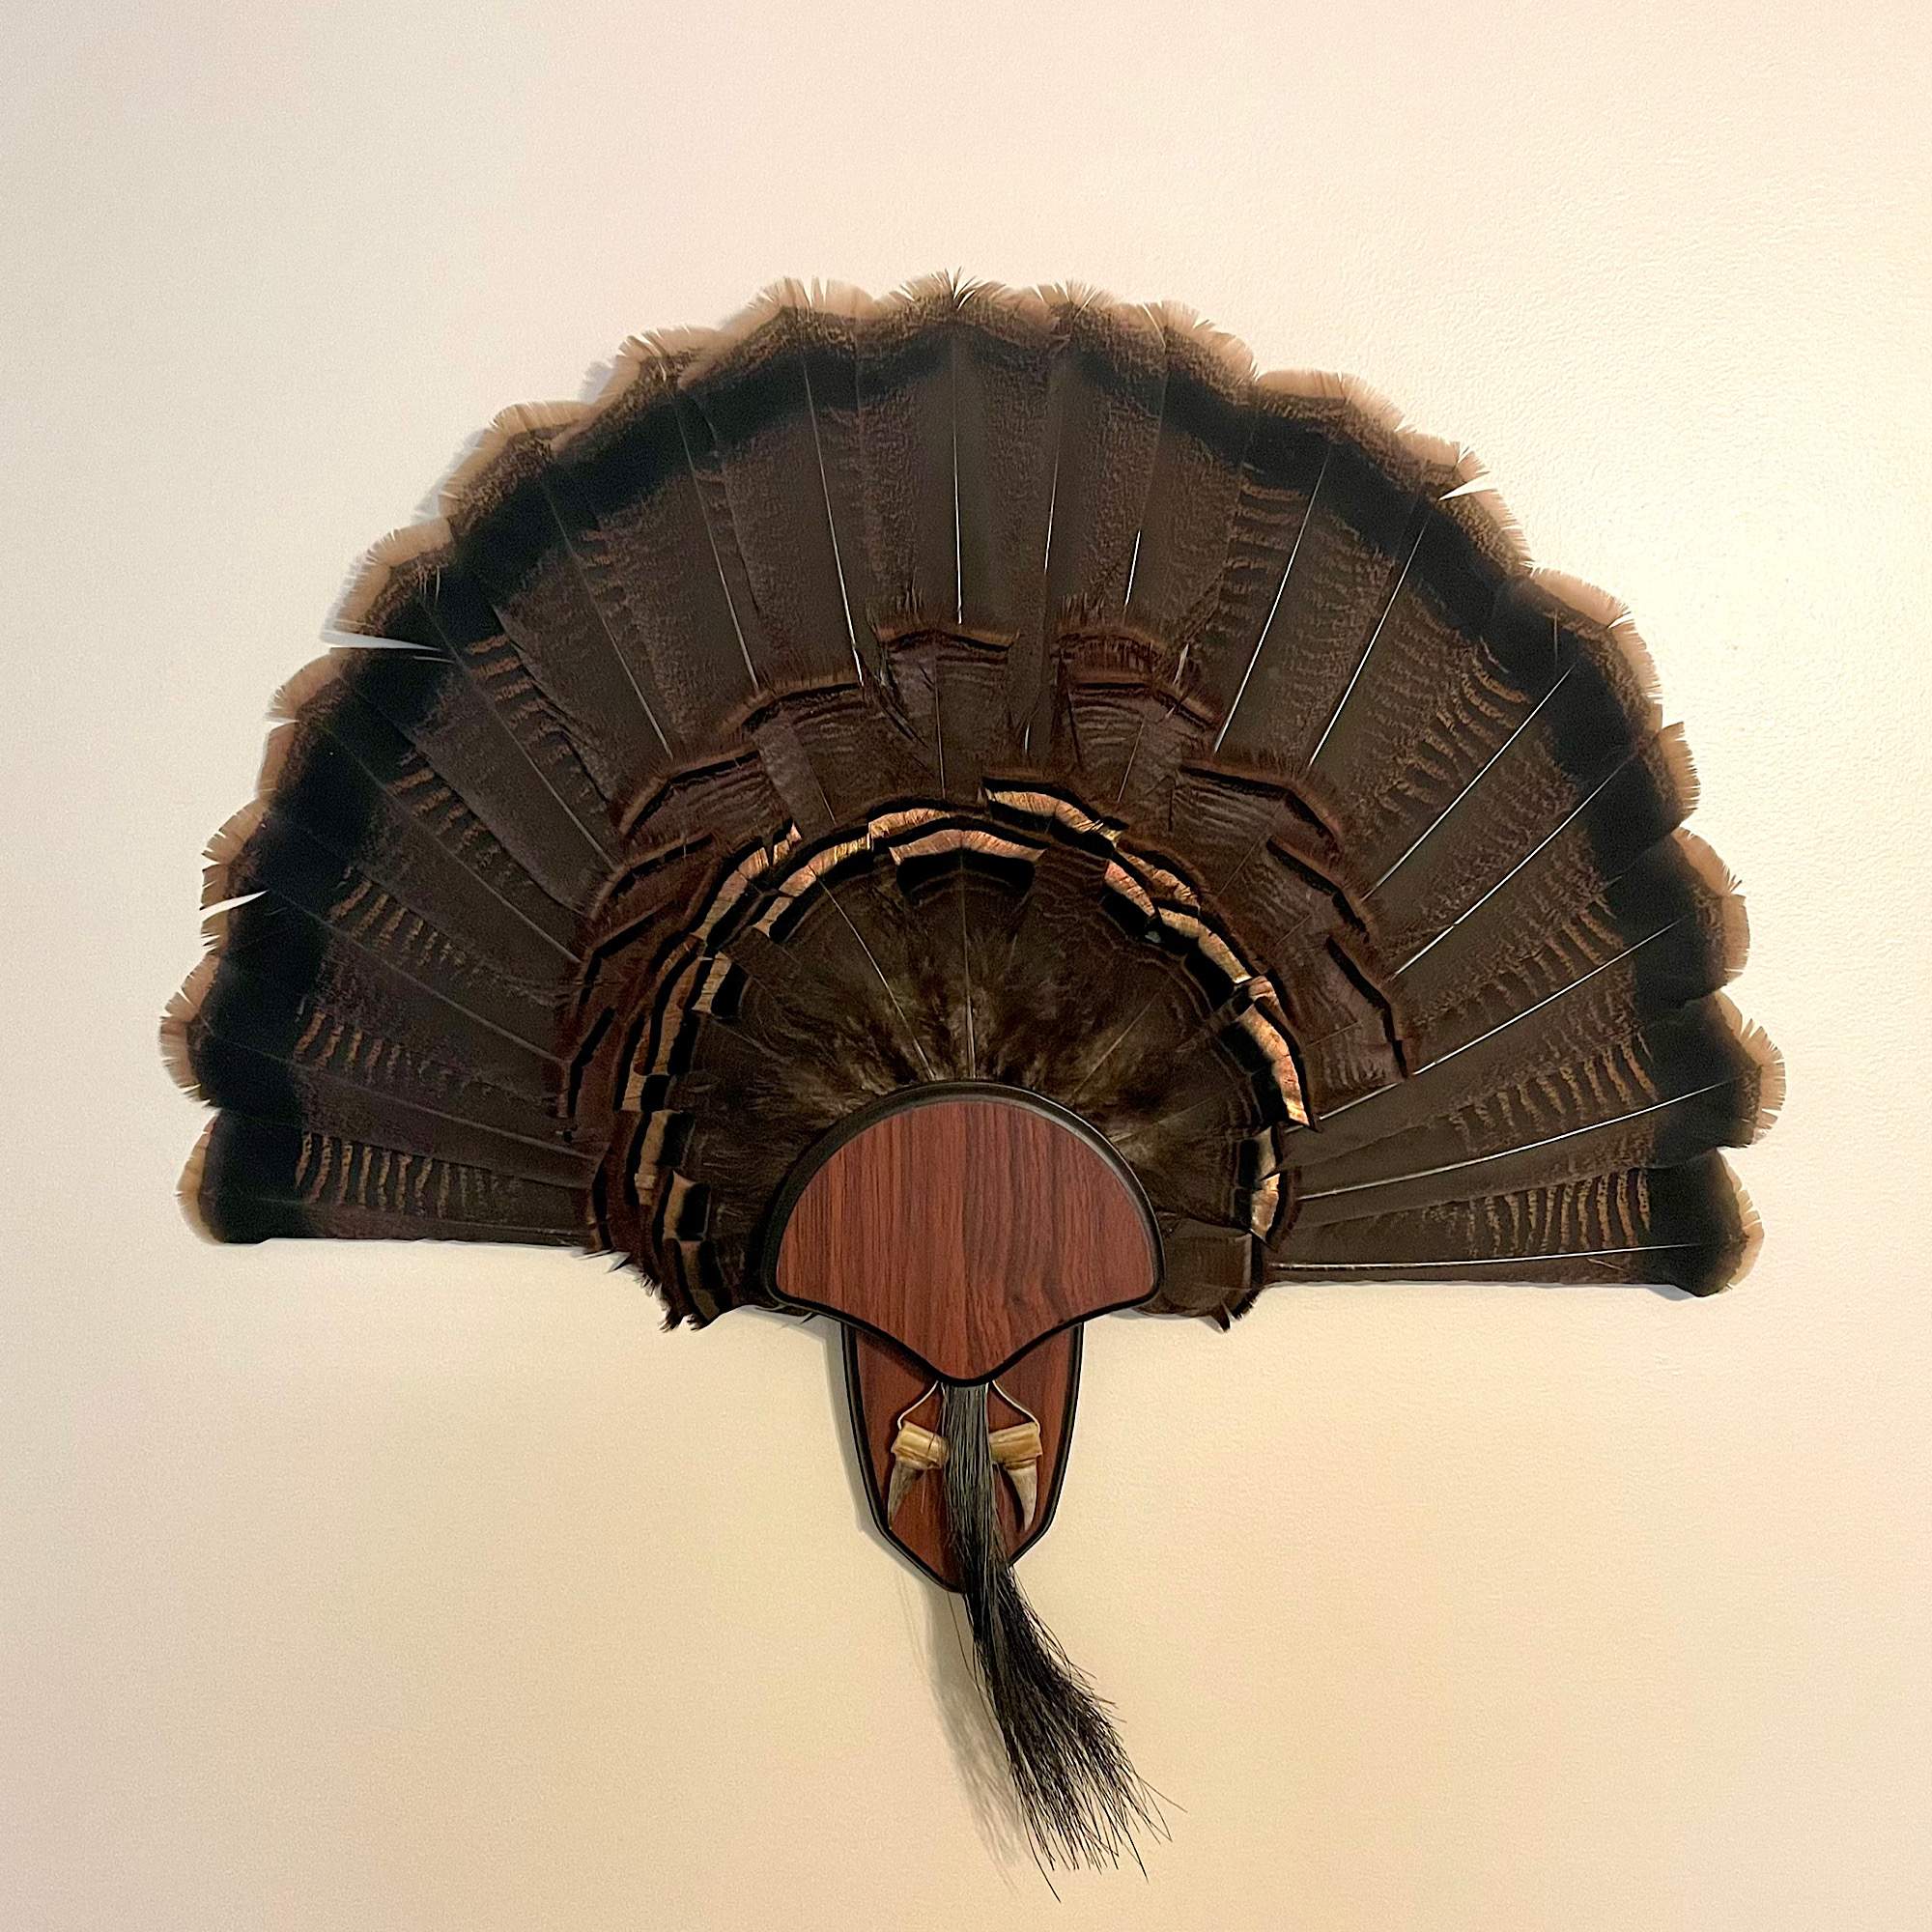 how to mount a turkey fan